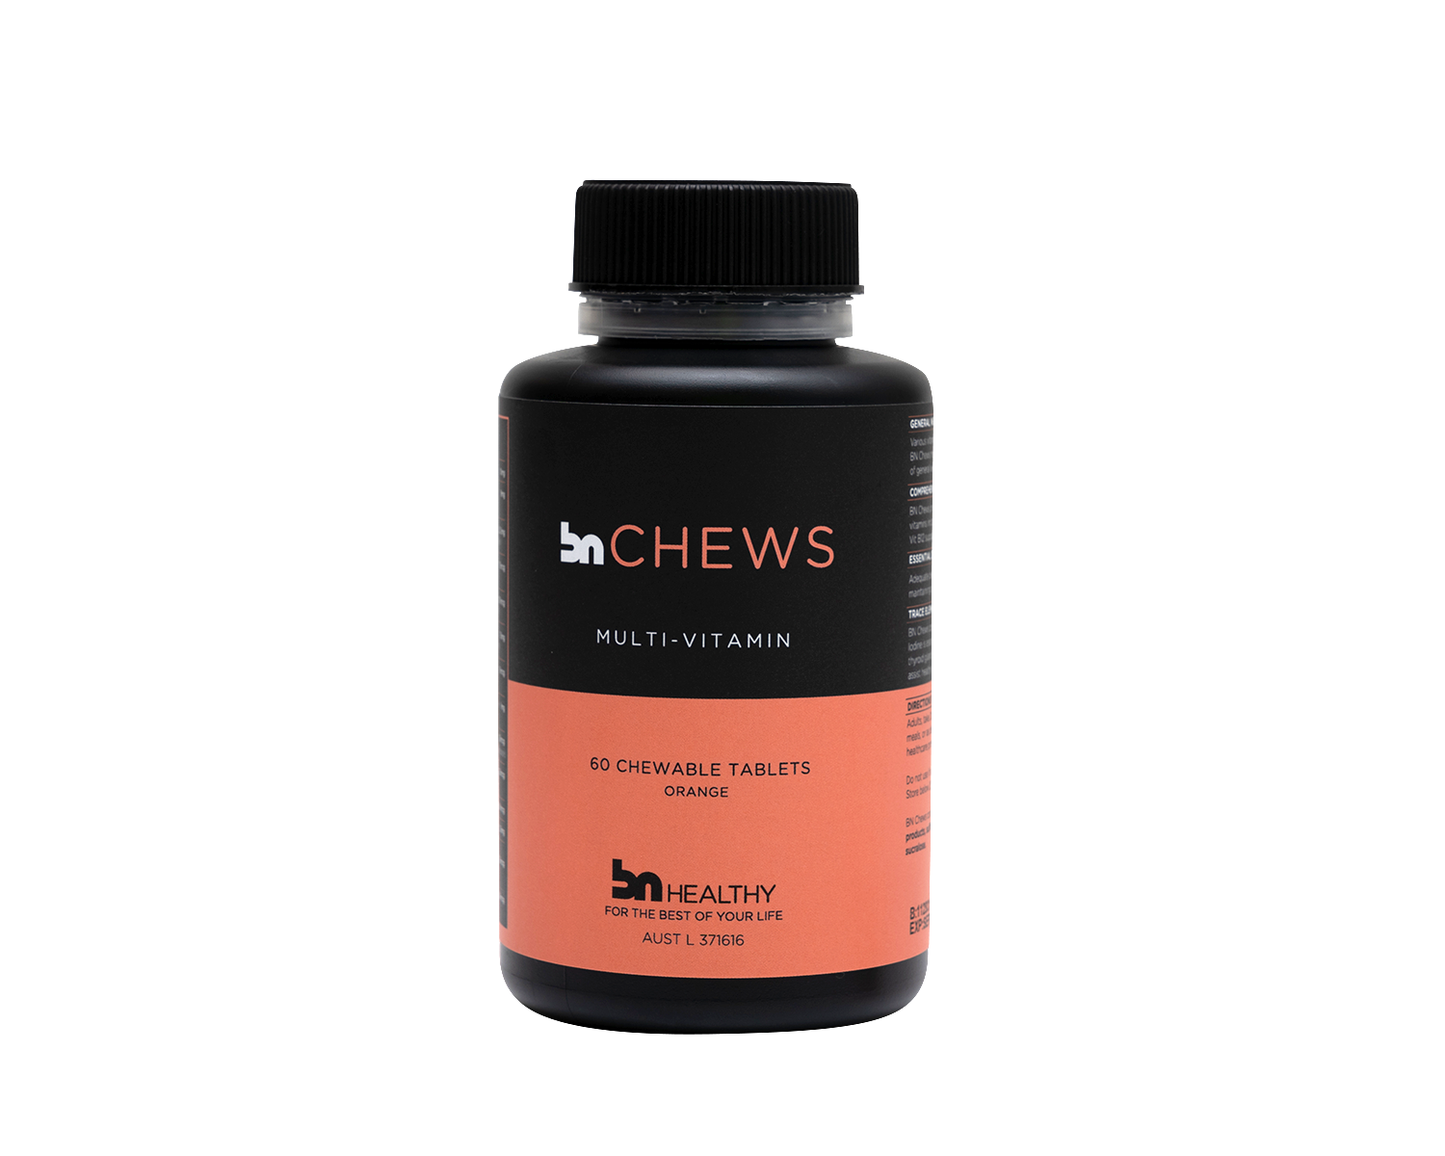 BN Chews - Chewable Multivitamins - 6 Bottles - Save 20%